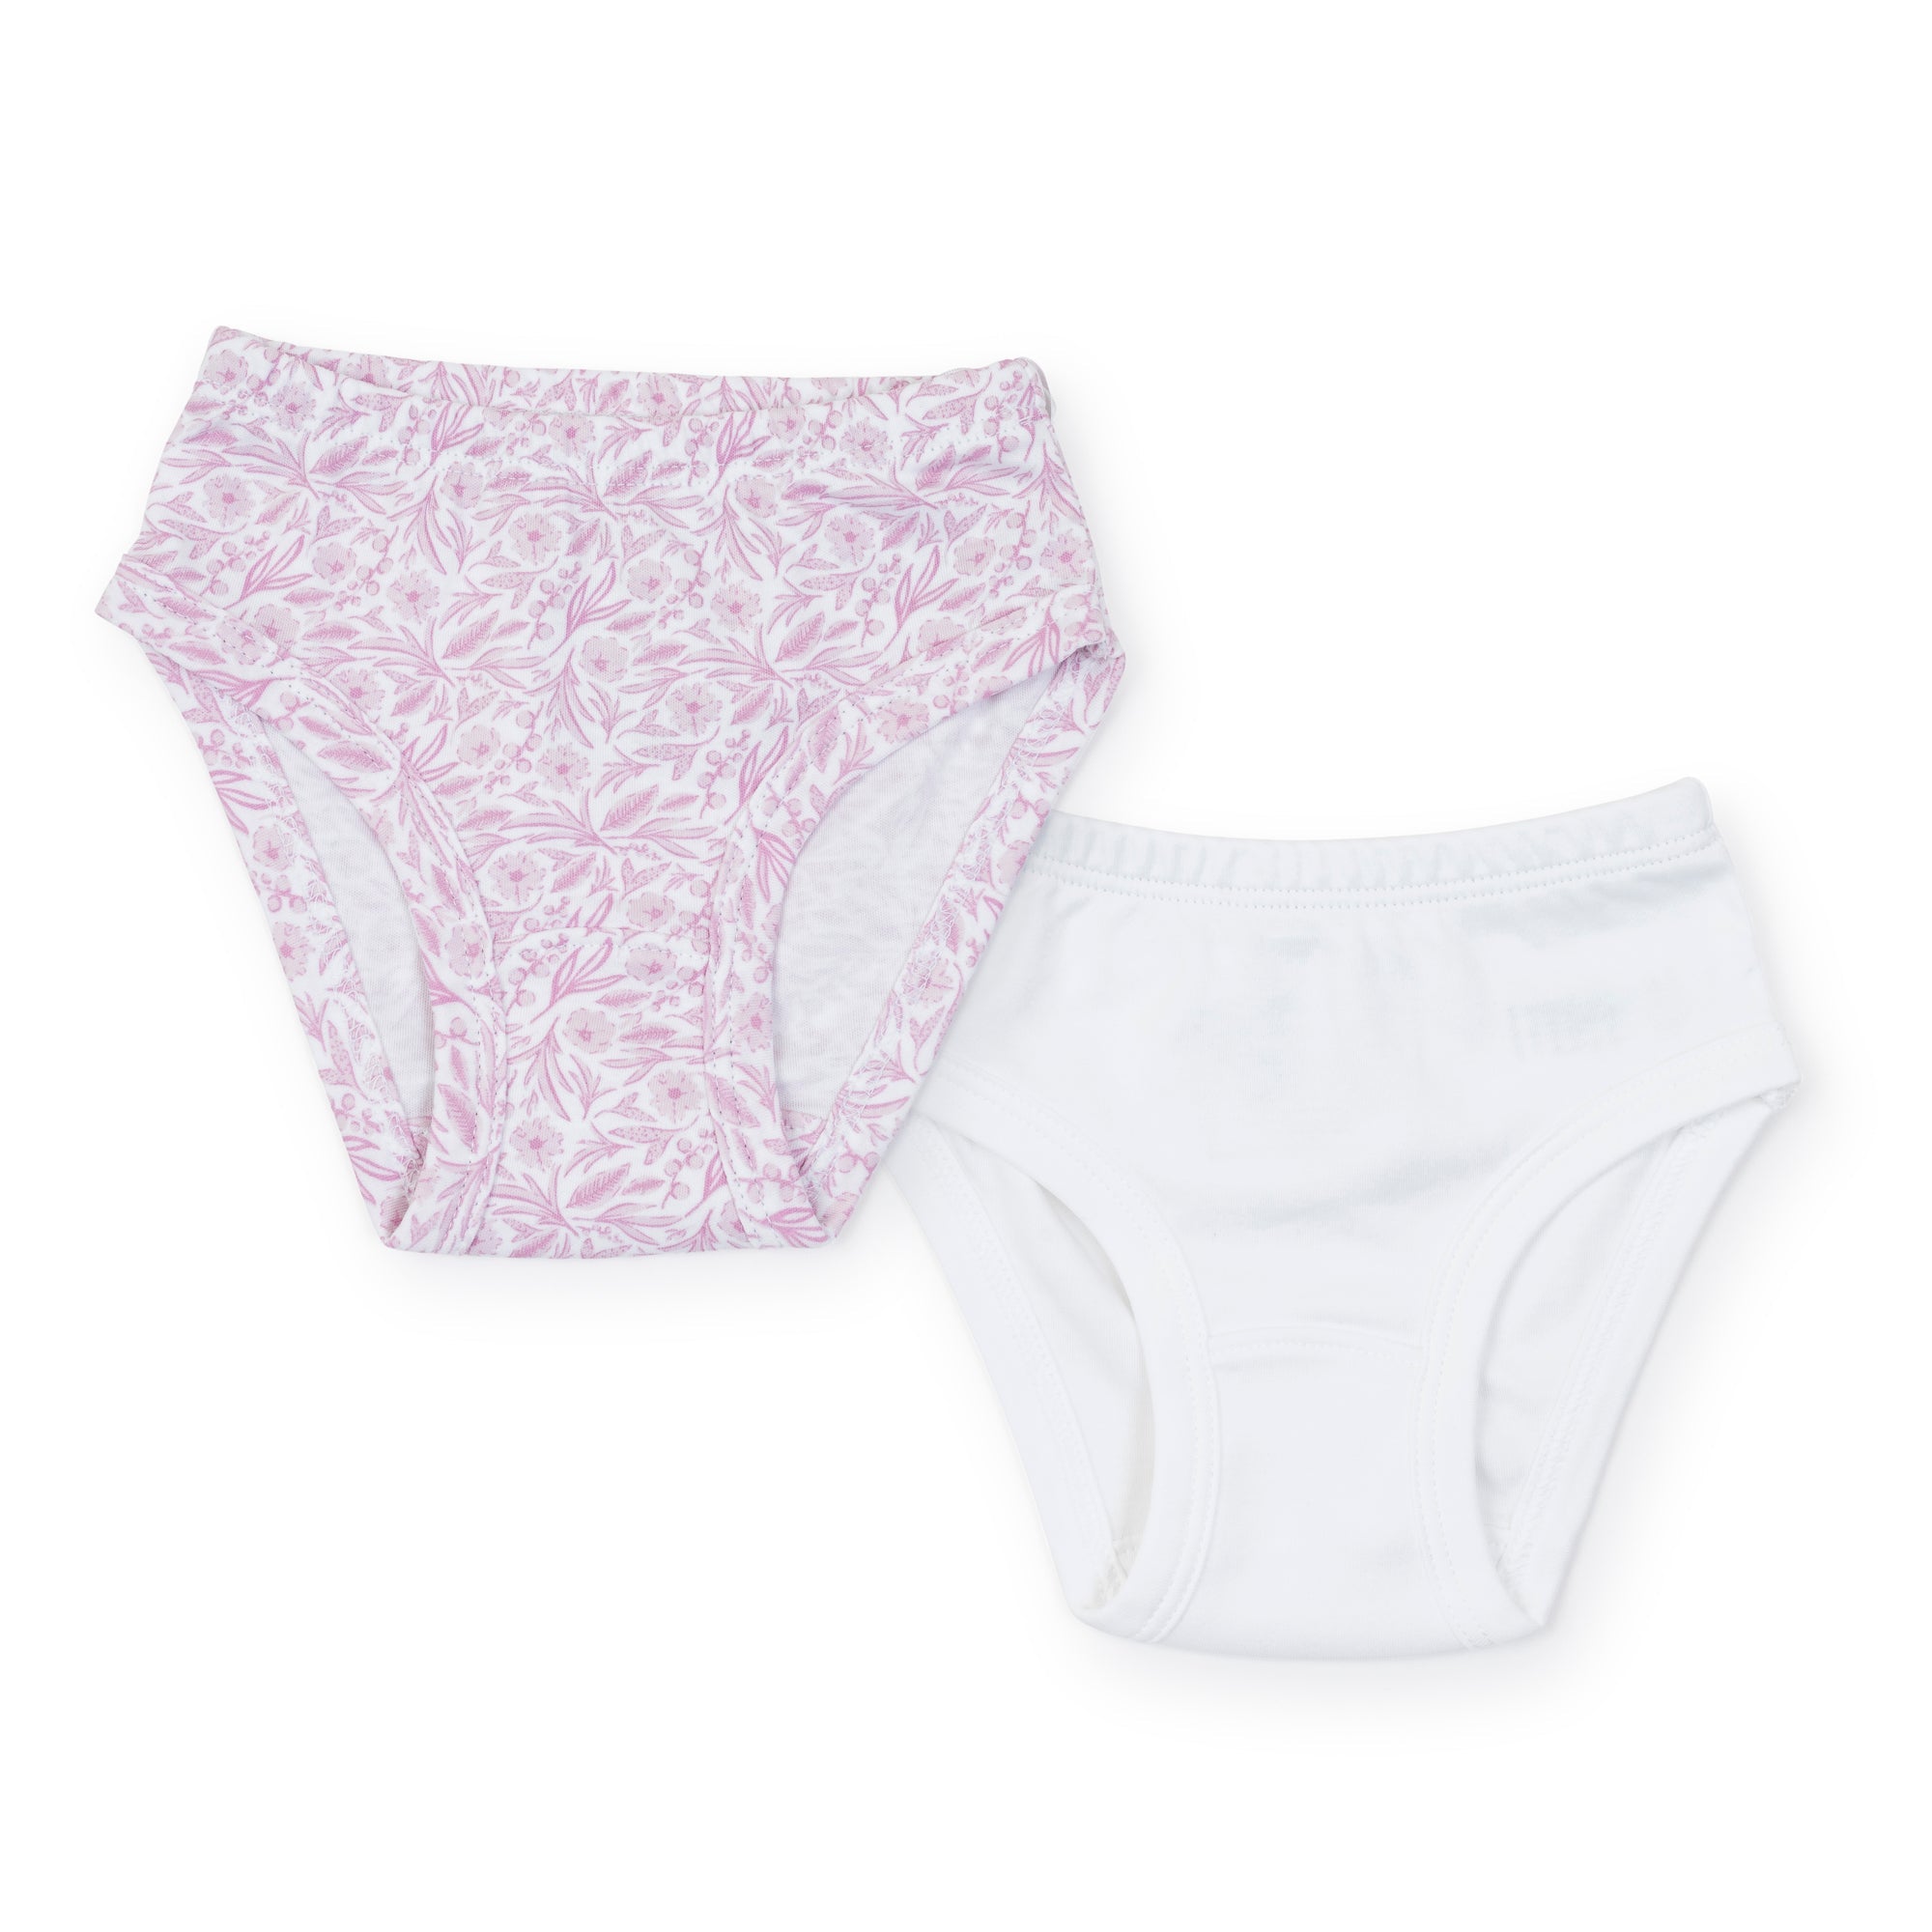 Lauren Girls' Pima Cotton Underwear Set - Pretty Pink Blooms/white